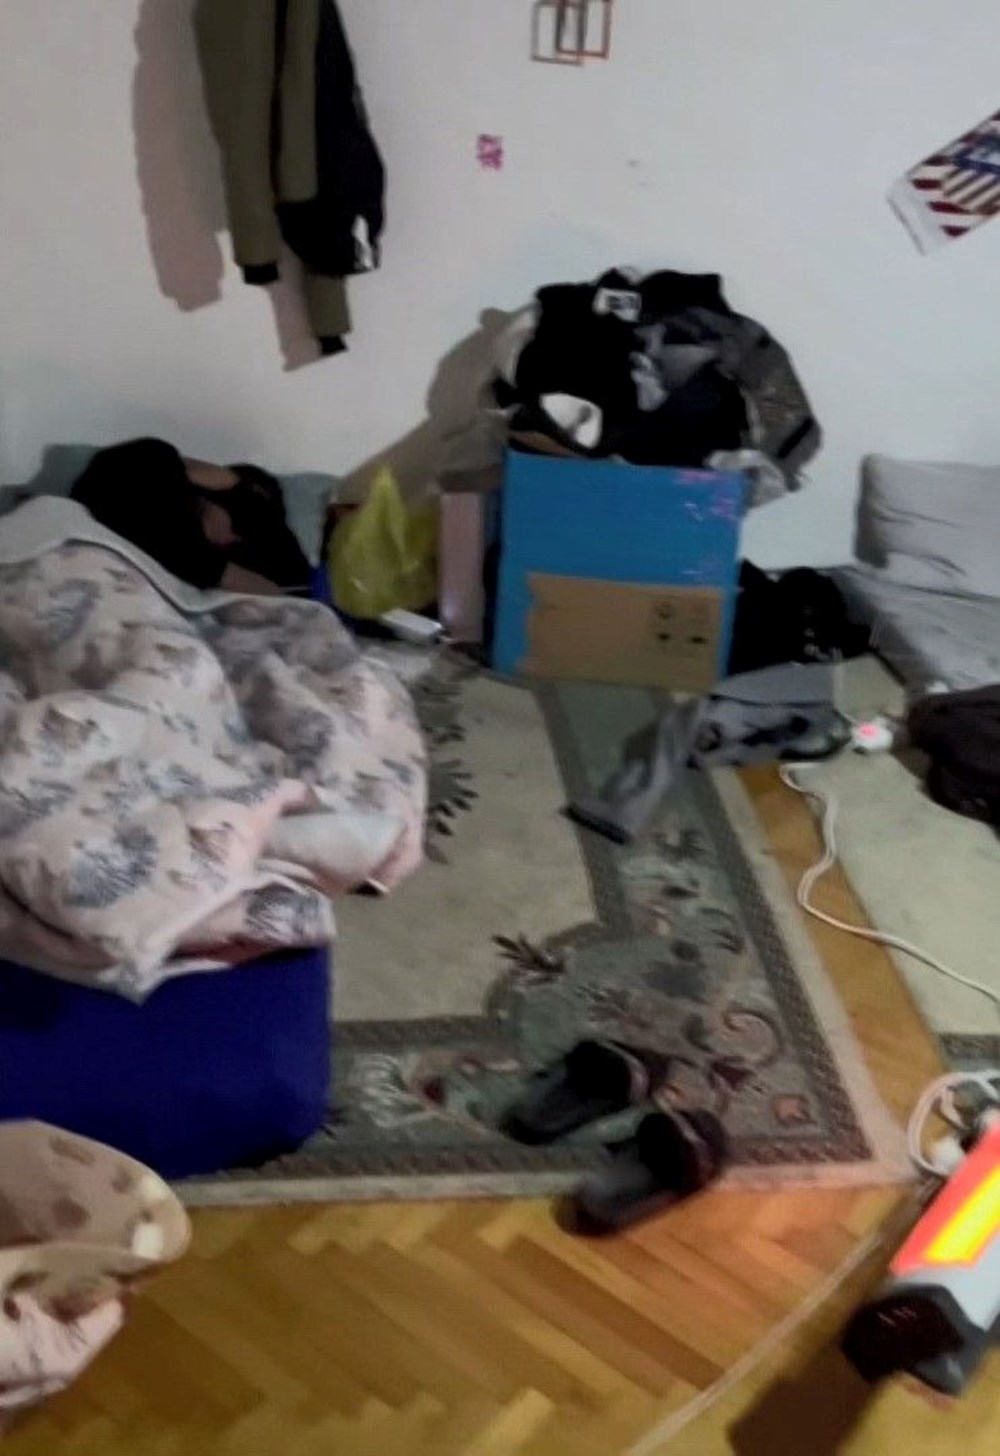 Kiracı
1 odayı 5 kişiye kiraladı: İstanbul'da 50 Euro'ya yer yatağı - 2